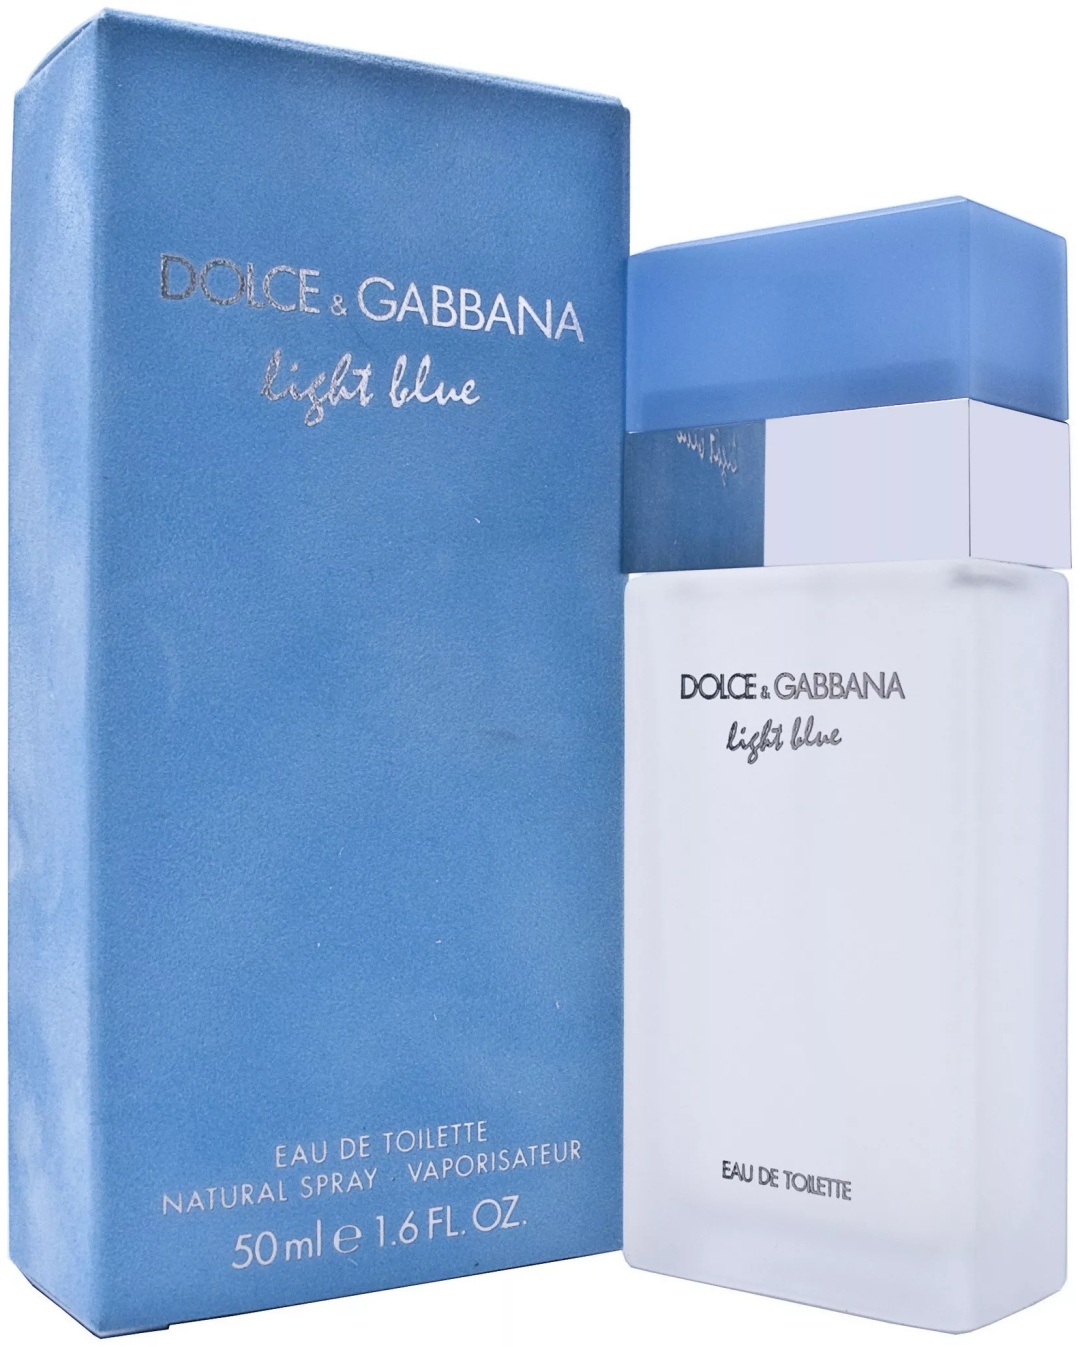 Dolce gabbana light blue аромат. Dolce & Gabbana Light Blue EDT 50ml. Духи Dolce Gabbana Light Blue женские 50ml. Дольче Габбана Лайт Блю 50 мл. D G Light Blue женские 50 мл.